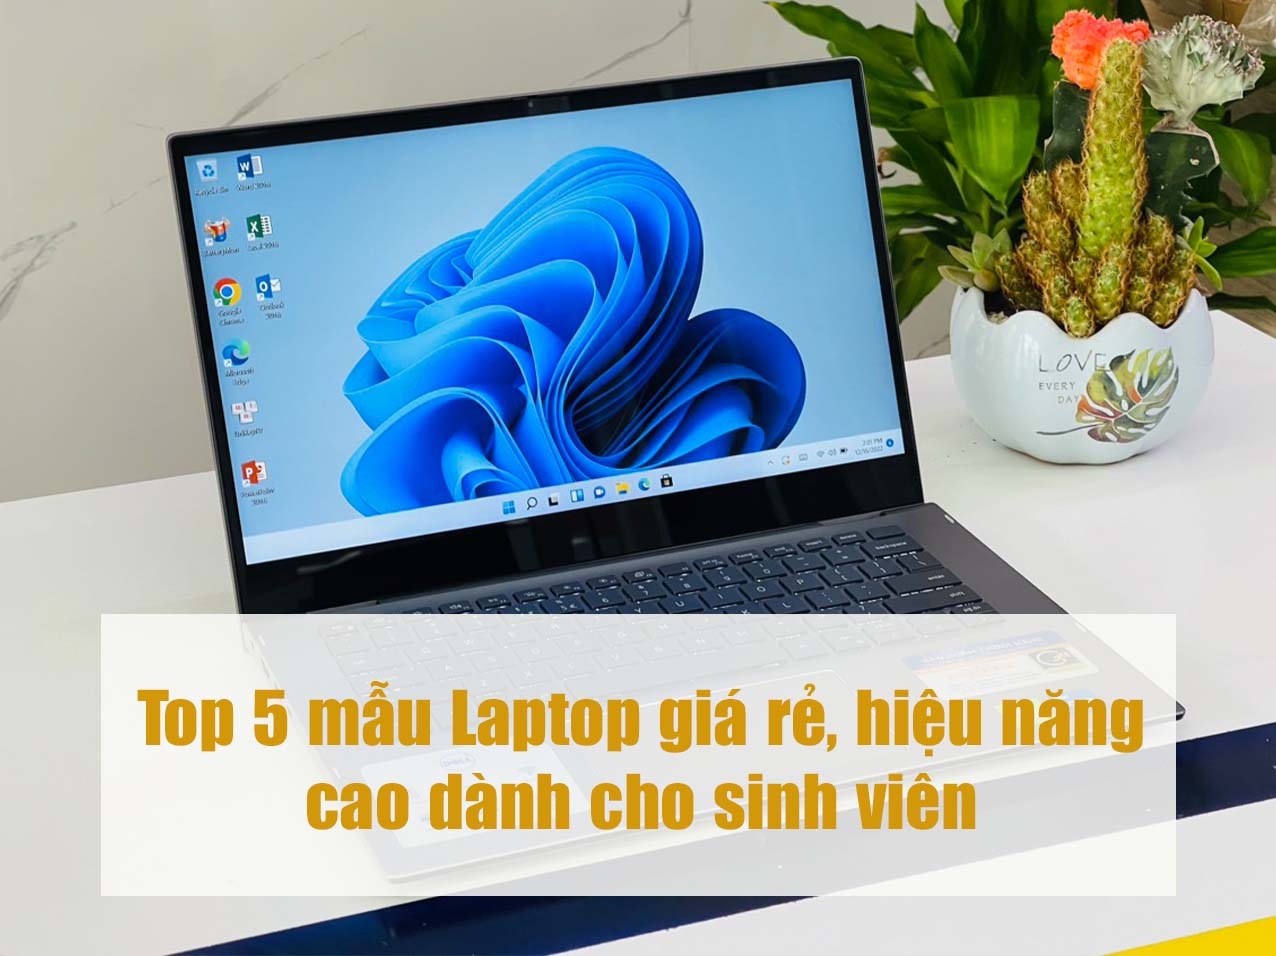 Top 5 mẫu Laptop giá rẻ, hiệu năng cao dành cho sinh viên